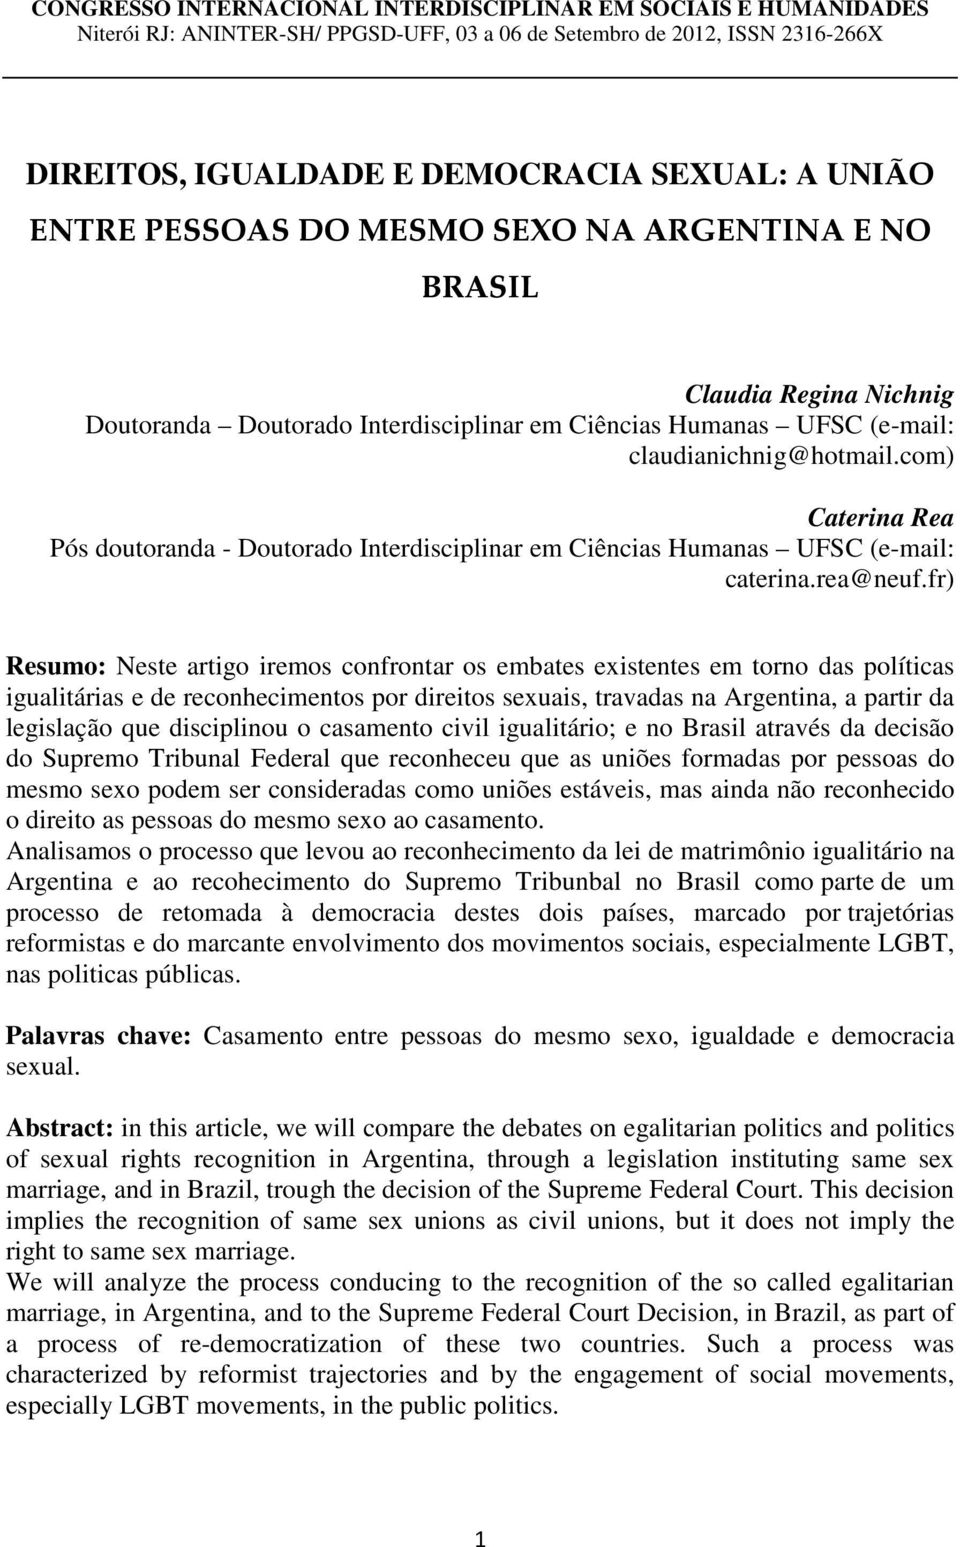 com) Caterina Rea Pós doutoranda - Doutorado Interdisciplinar em Ciências Humanas UFSC (e-mail: caterina.rea@neuf.